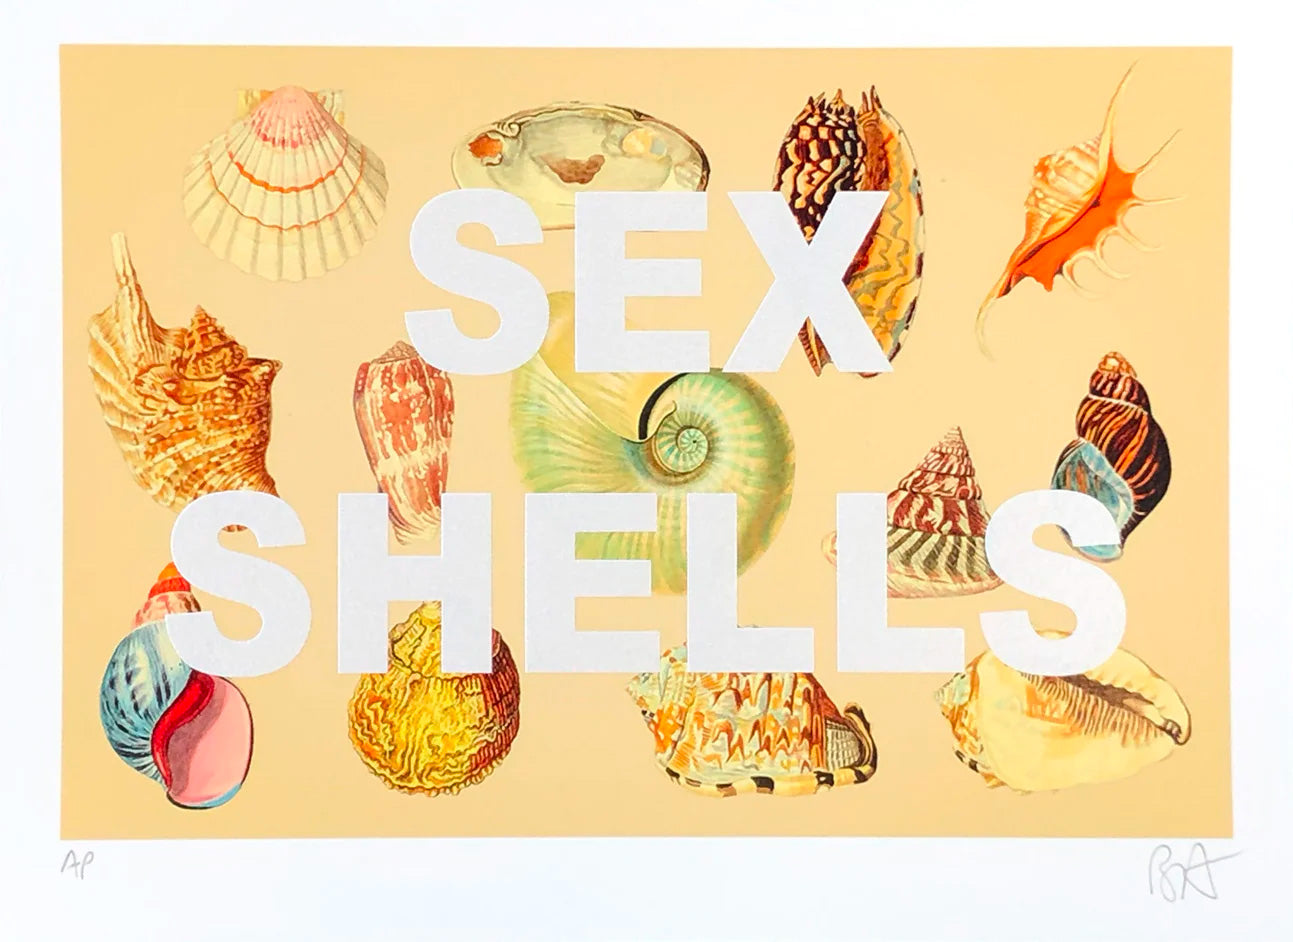 (She Sells) Sex Shells